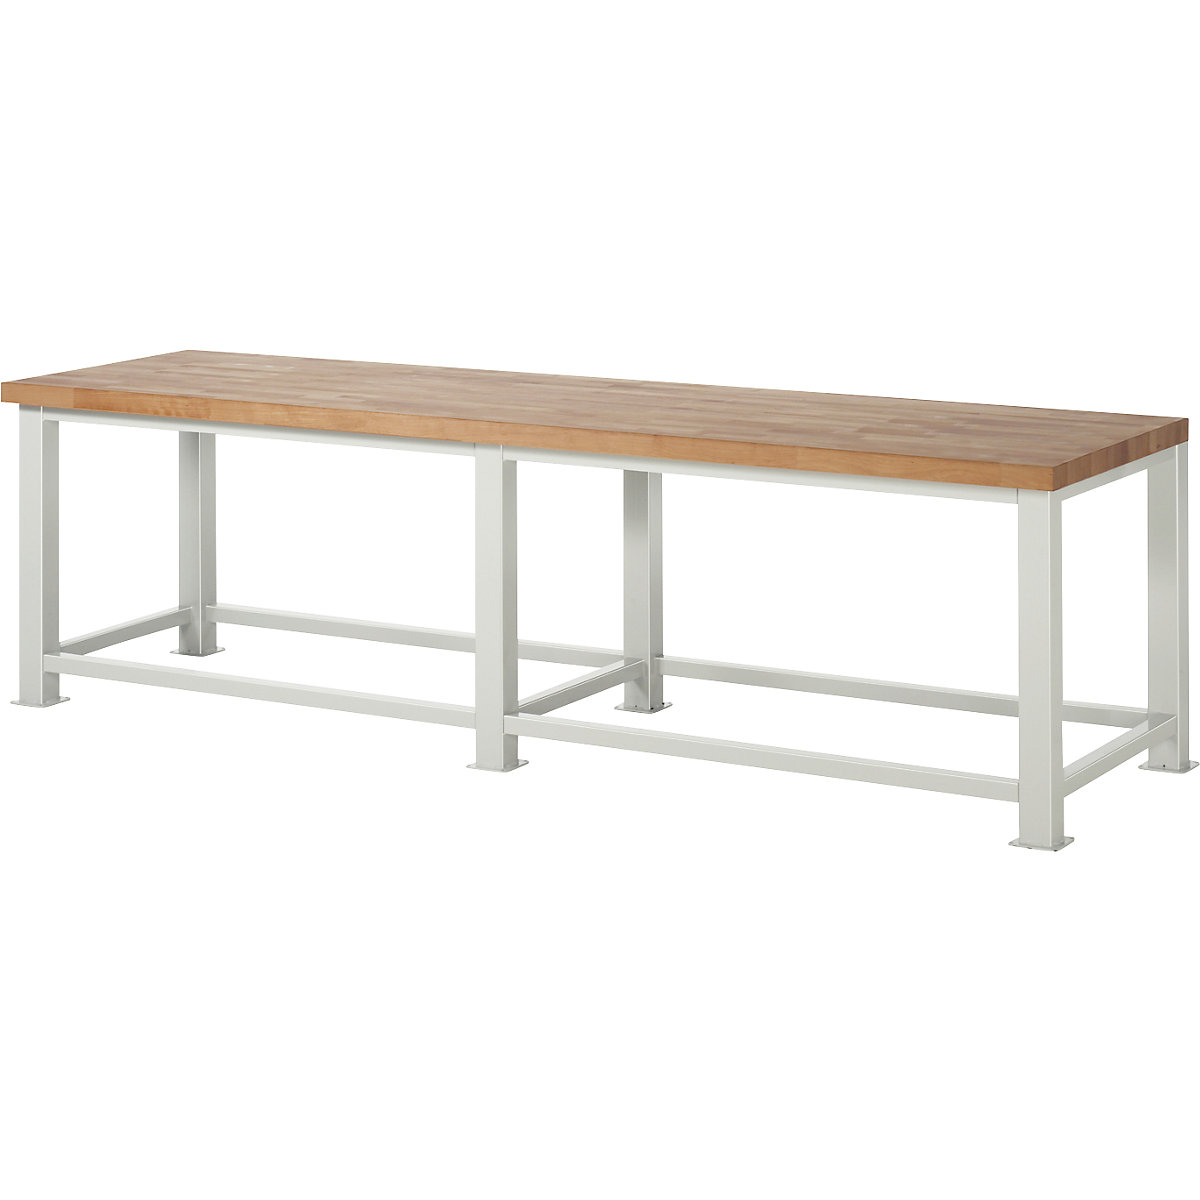 Stół warsztatowy do dużych obciążeń – RAU, grubość blatu: 50 mm, szer. x głęb. 3000 x 900 mm-6